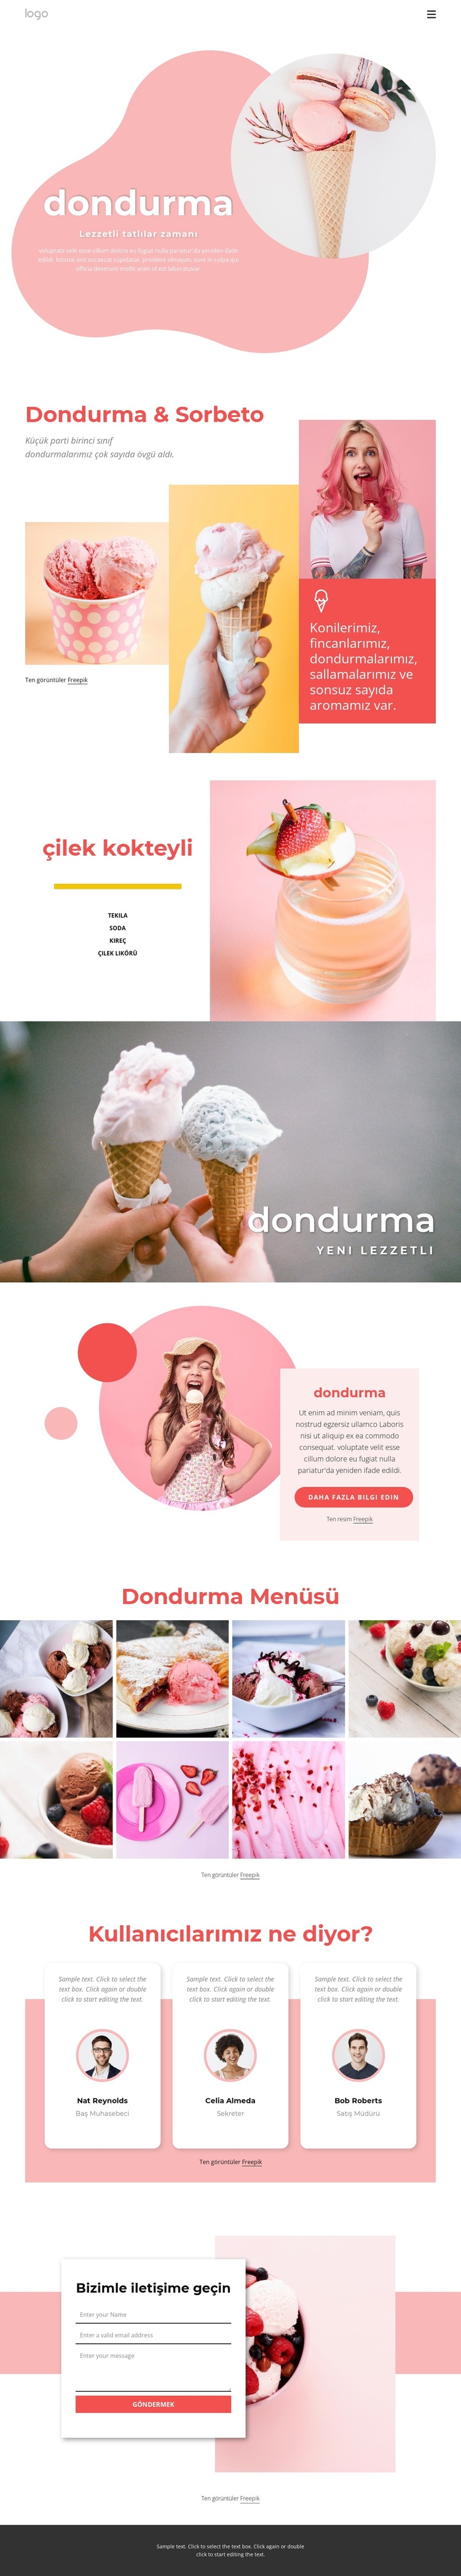 Dondurma ve Ffrozen yoğurt WordPress Teması